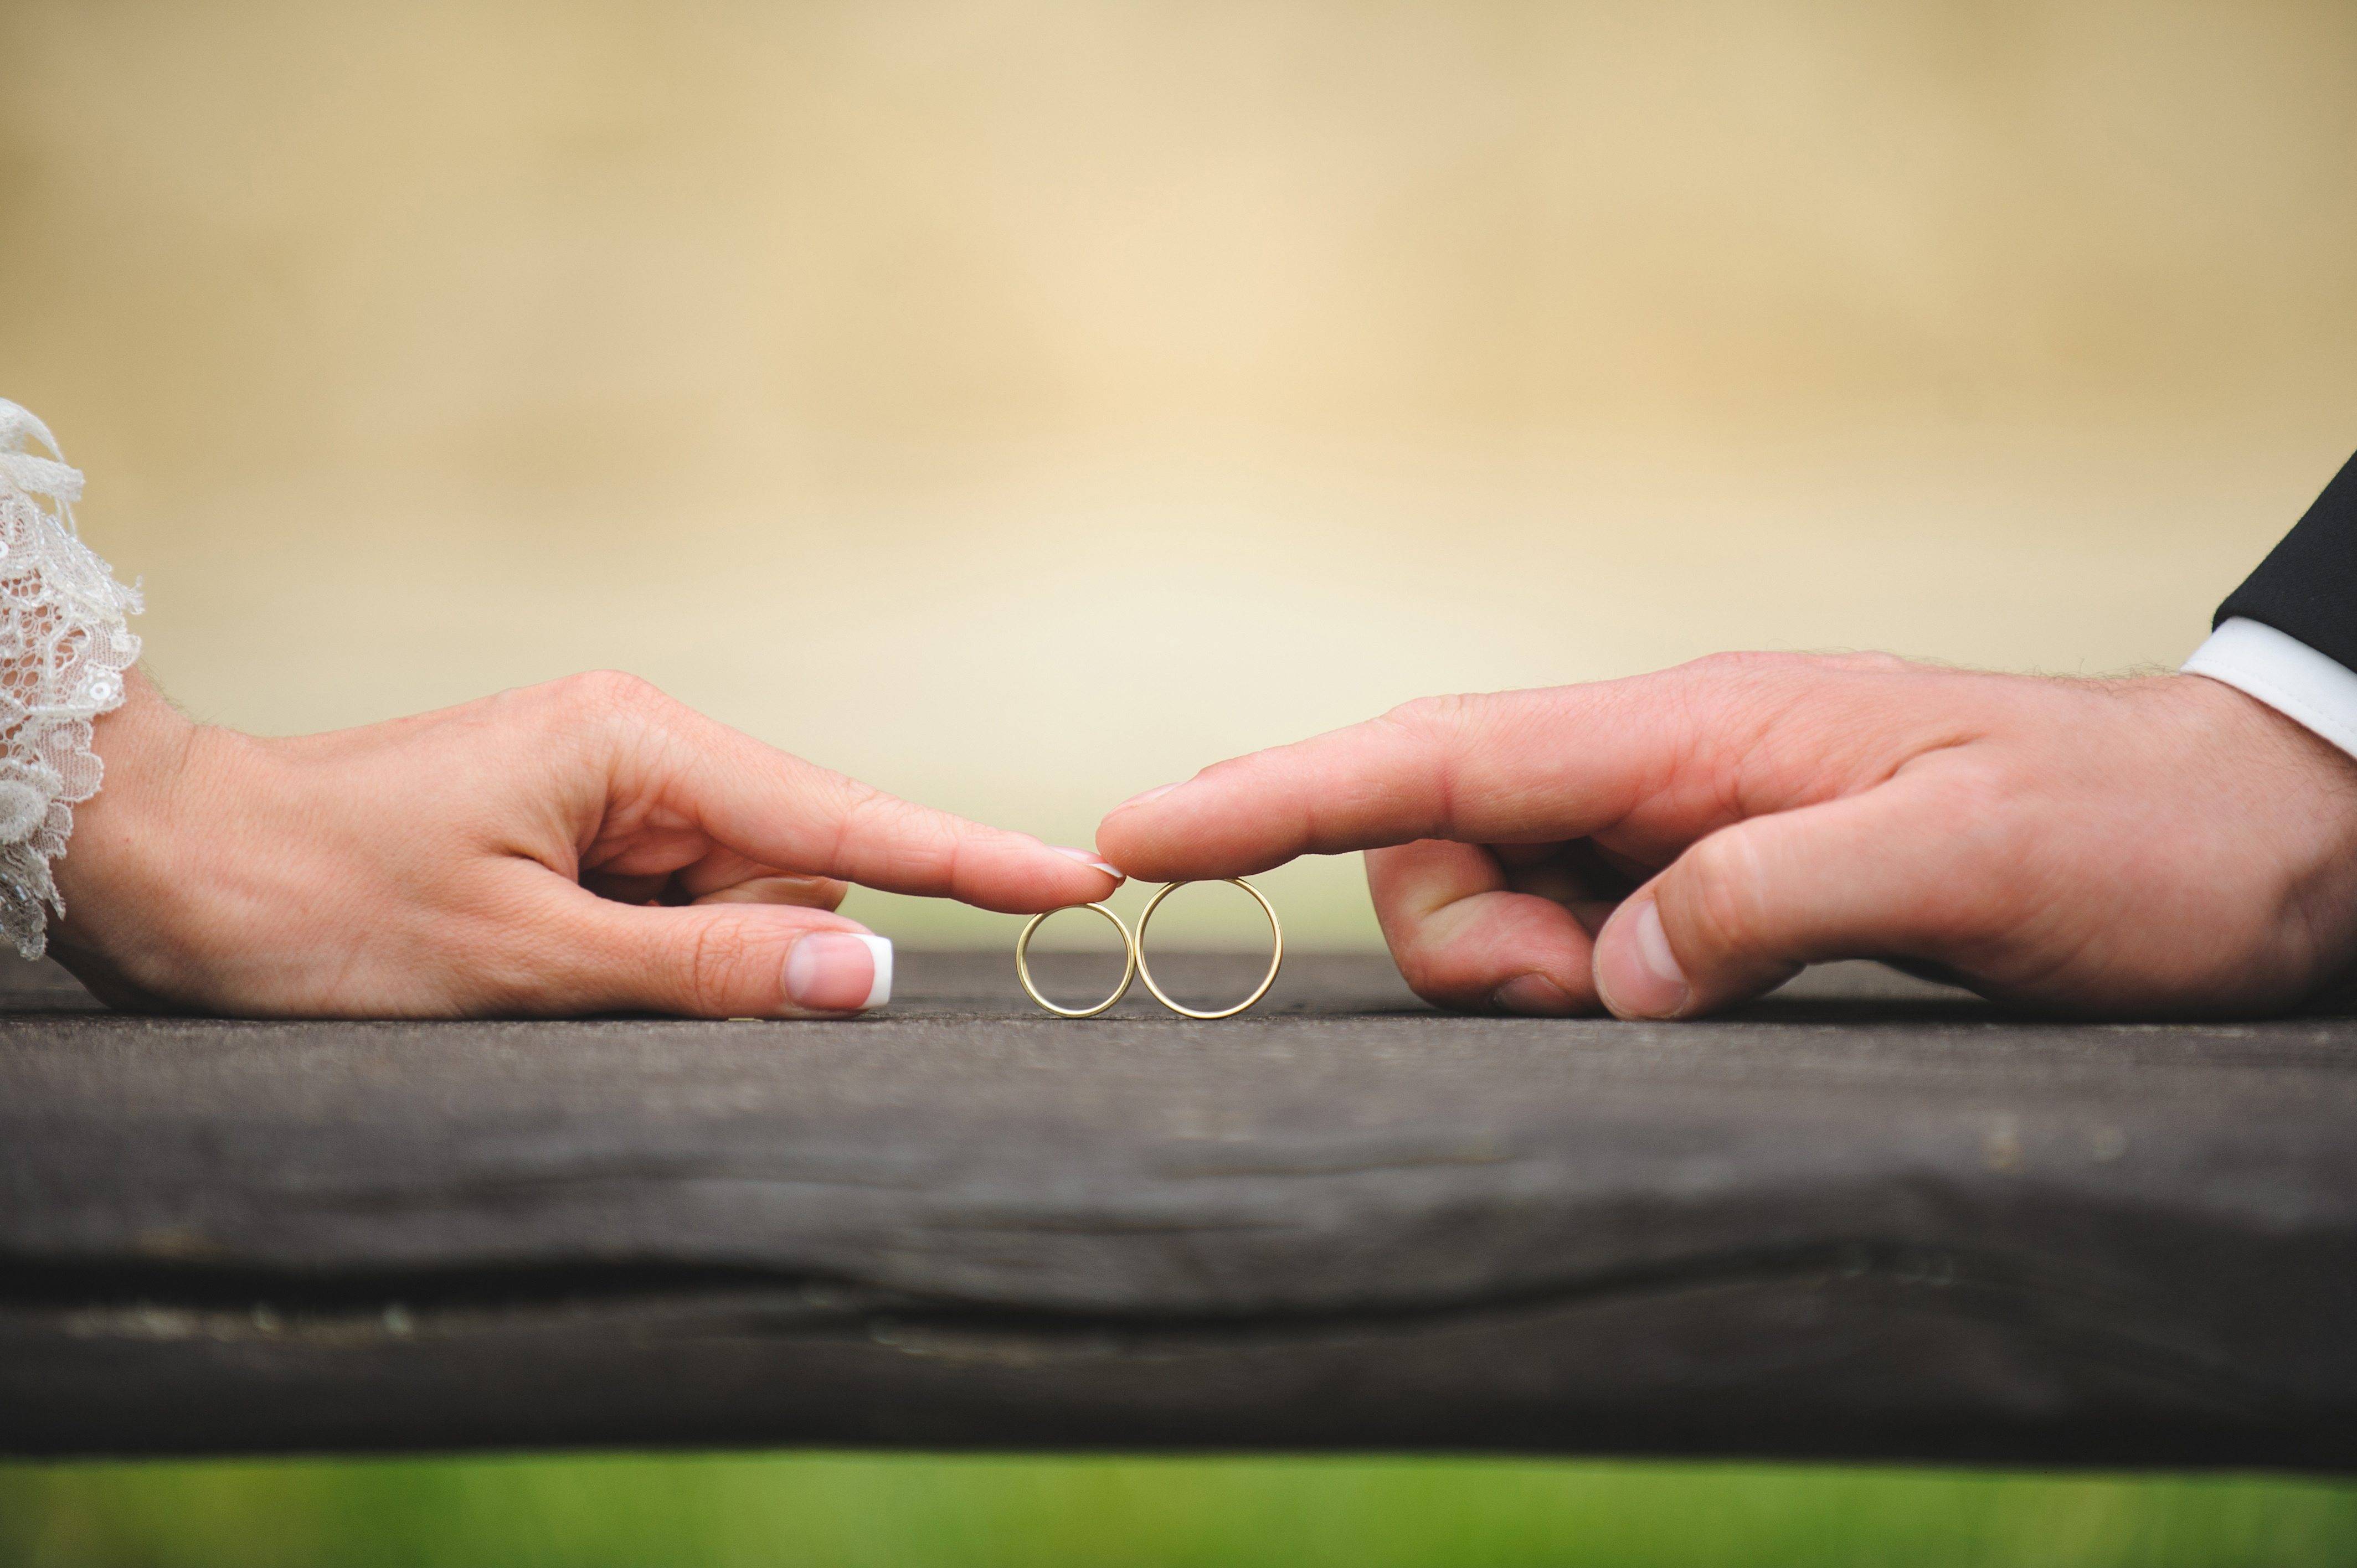 Вопрос замужества. Кольца жениха и невесты. Обручальные кольца жених и невеста. Свадьба руки с кольцами. Обручальные кольца картинки.